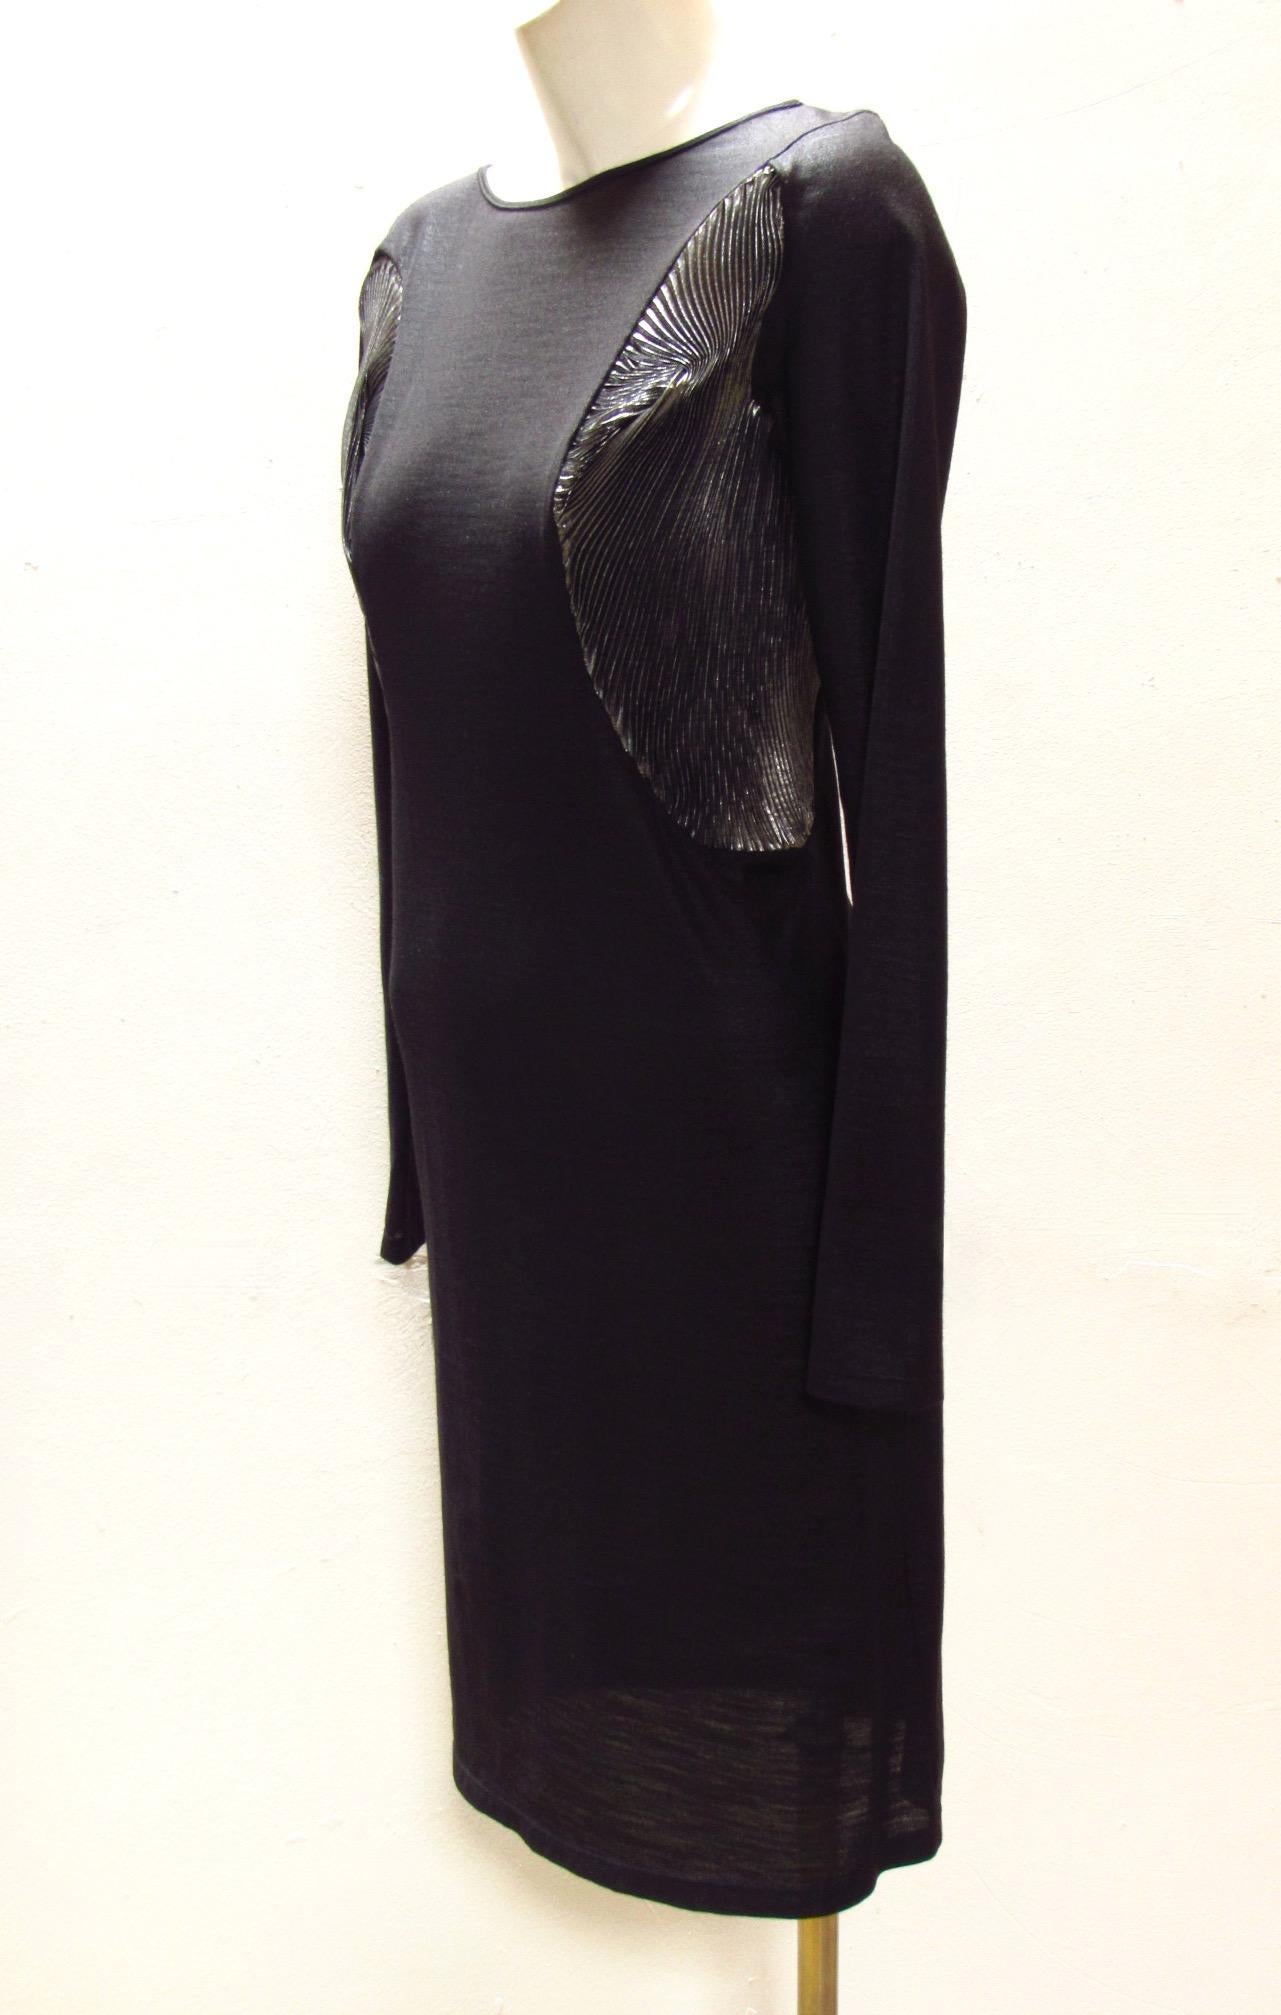 Dieses schwarze, taillierte Kleid mit langen Ärmeln von Hussein Chalayan im Vintage-Stil hat wunderbare silberne Metallic-Einsätze, die sich entlang des Oberteils und unter den Ärmeln wellenförmig bewegen. Es besteht aus 100 % Polyester.